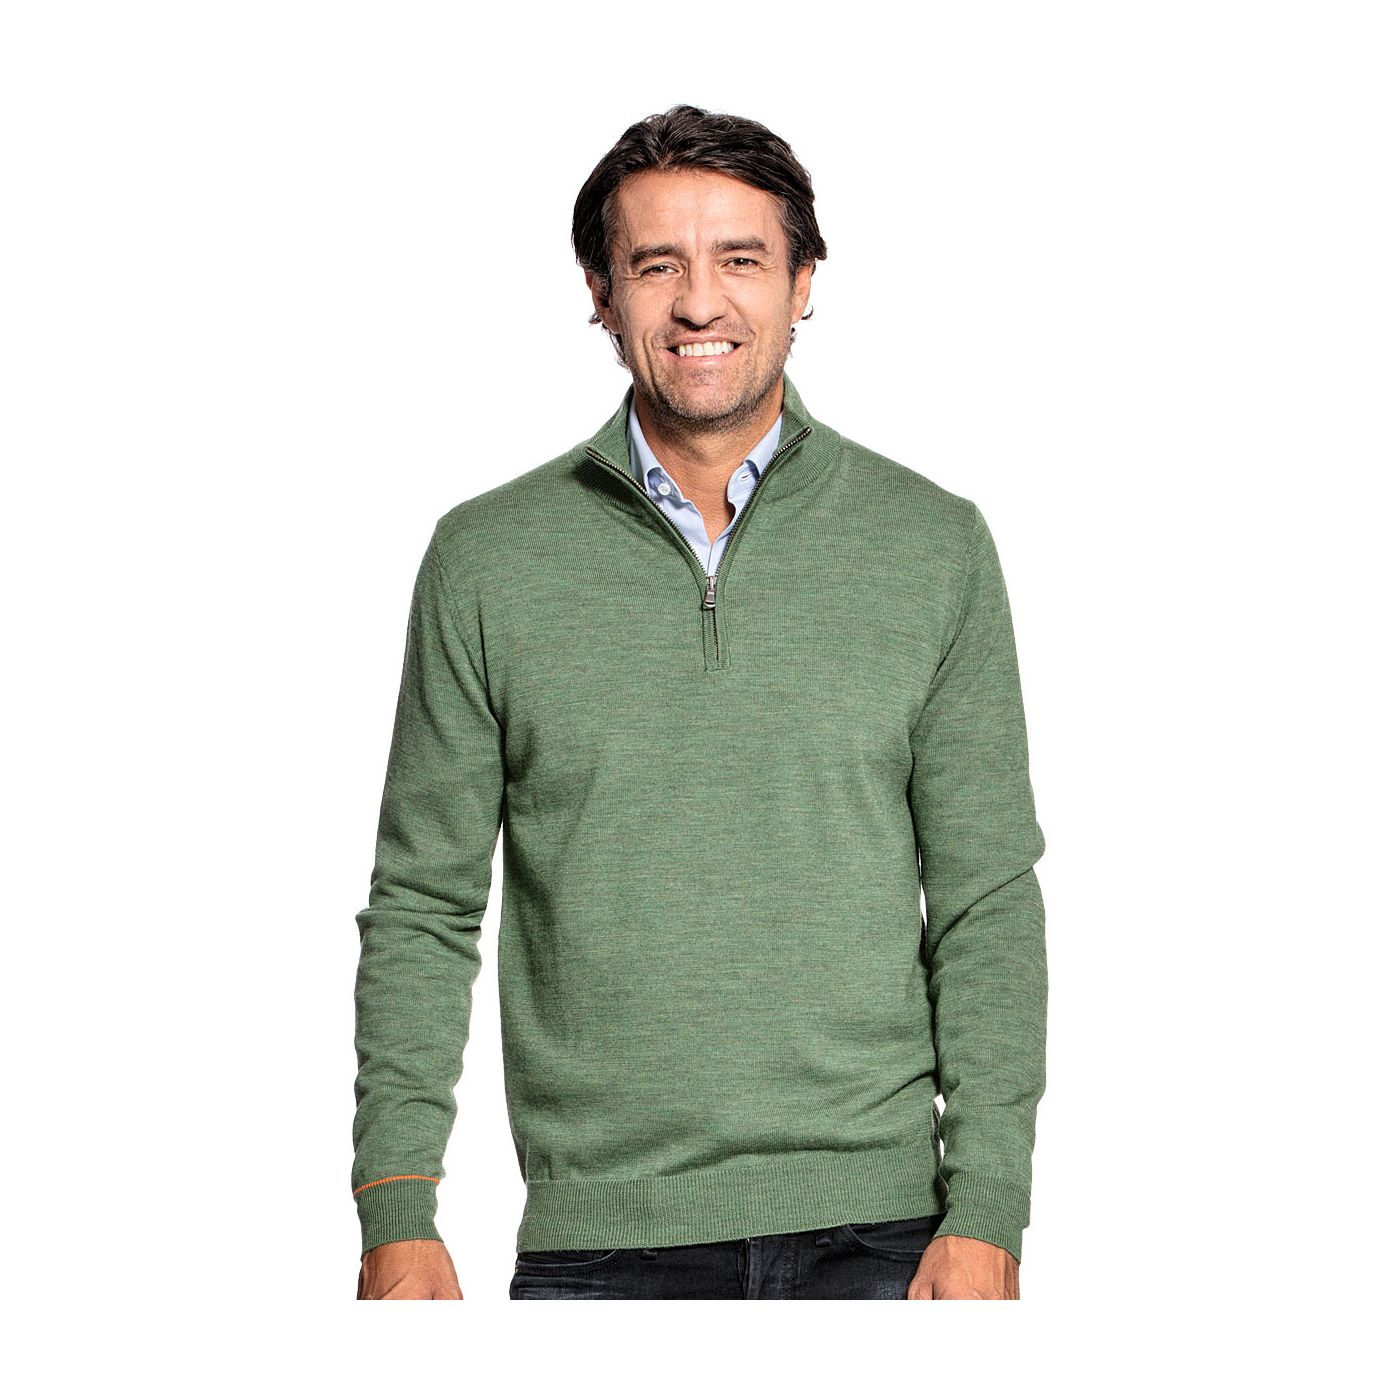 Half zip sweater for men made of Merino wool in Green